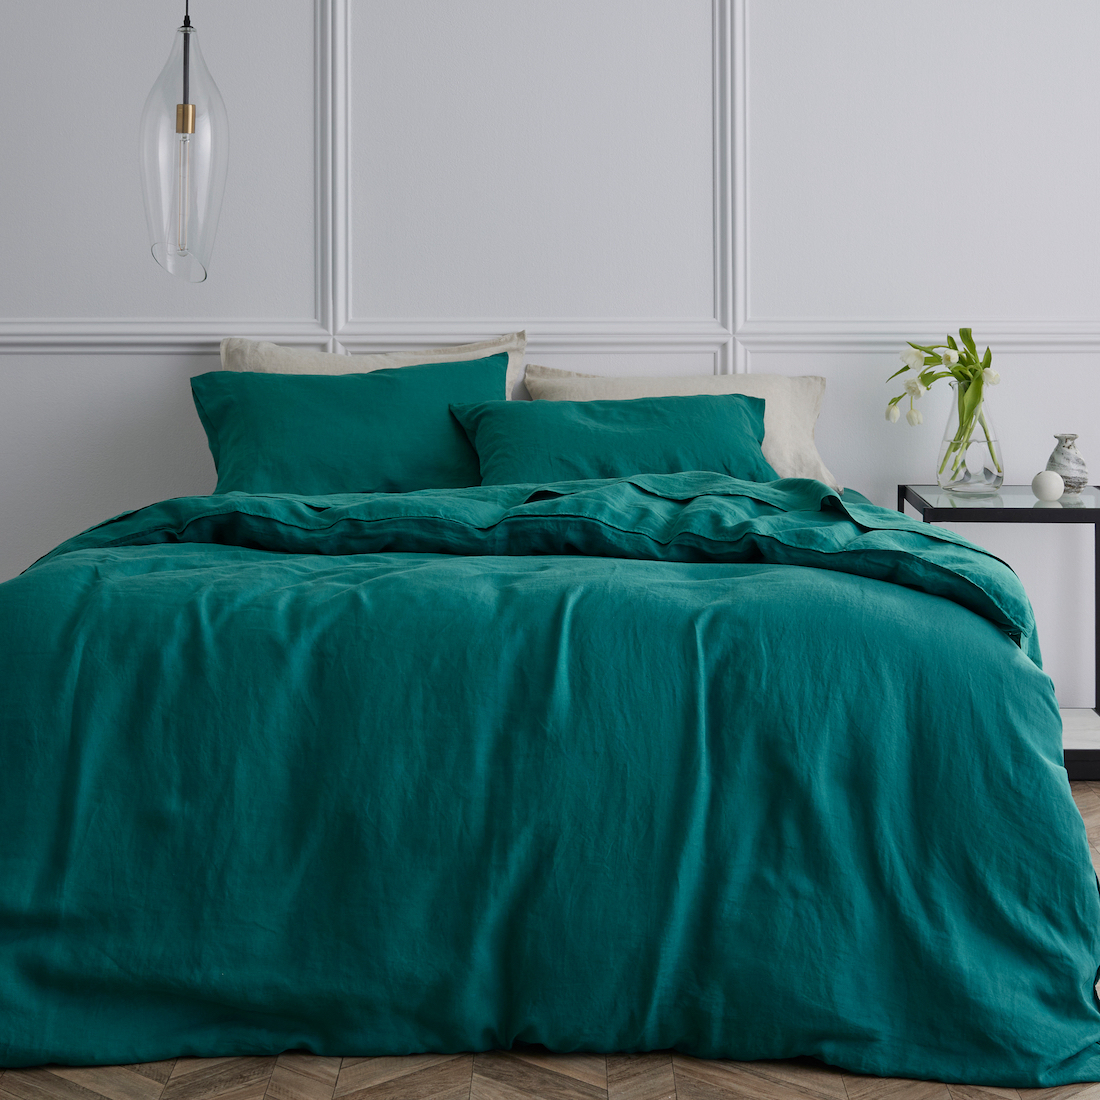 Emerald green linen bedding